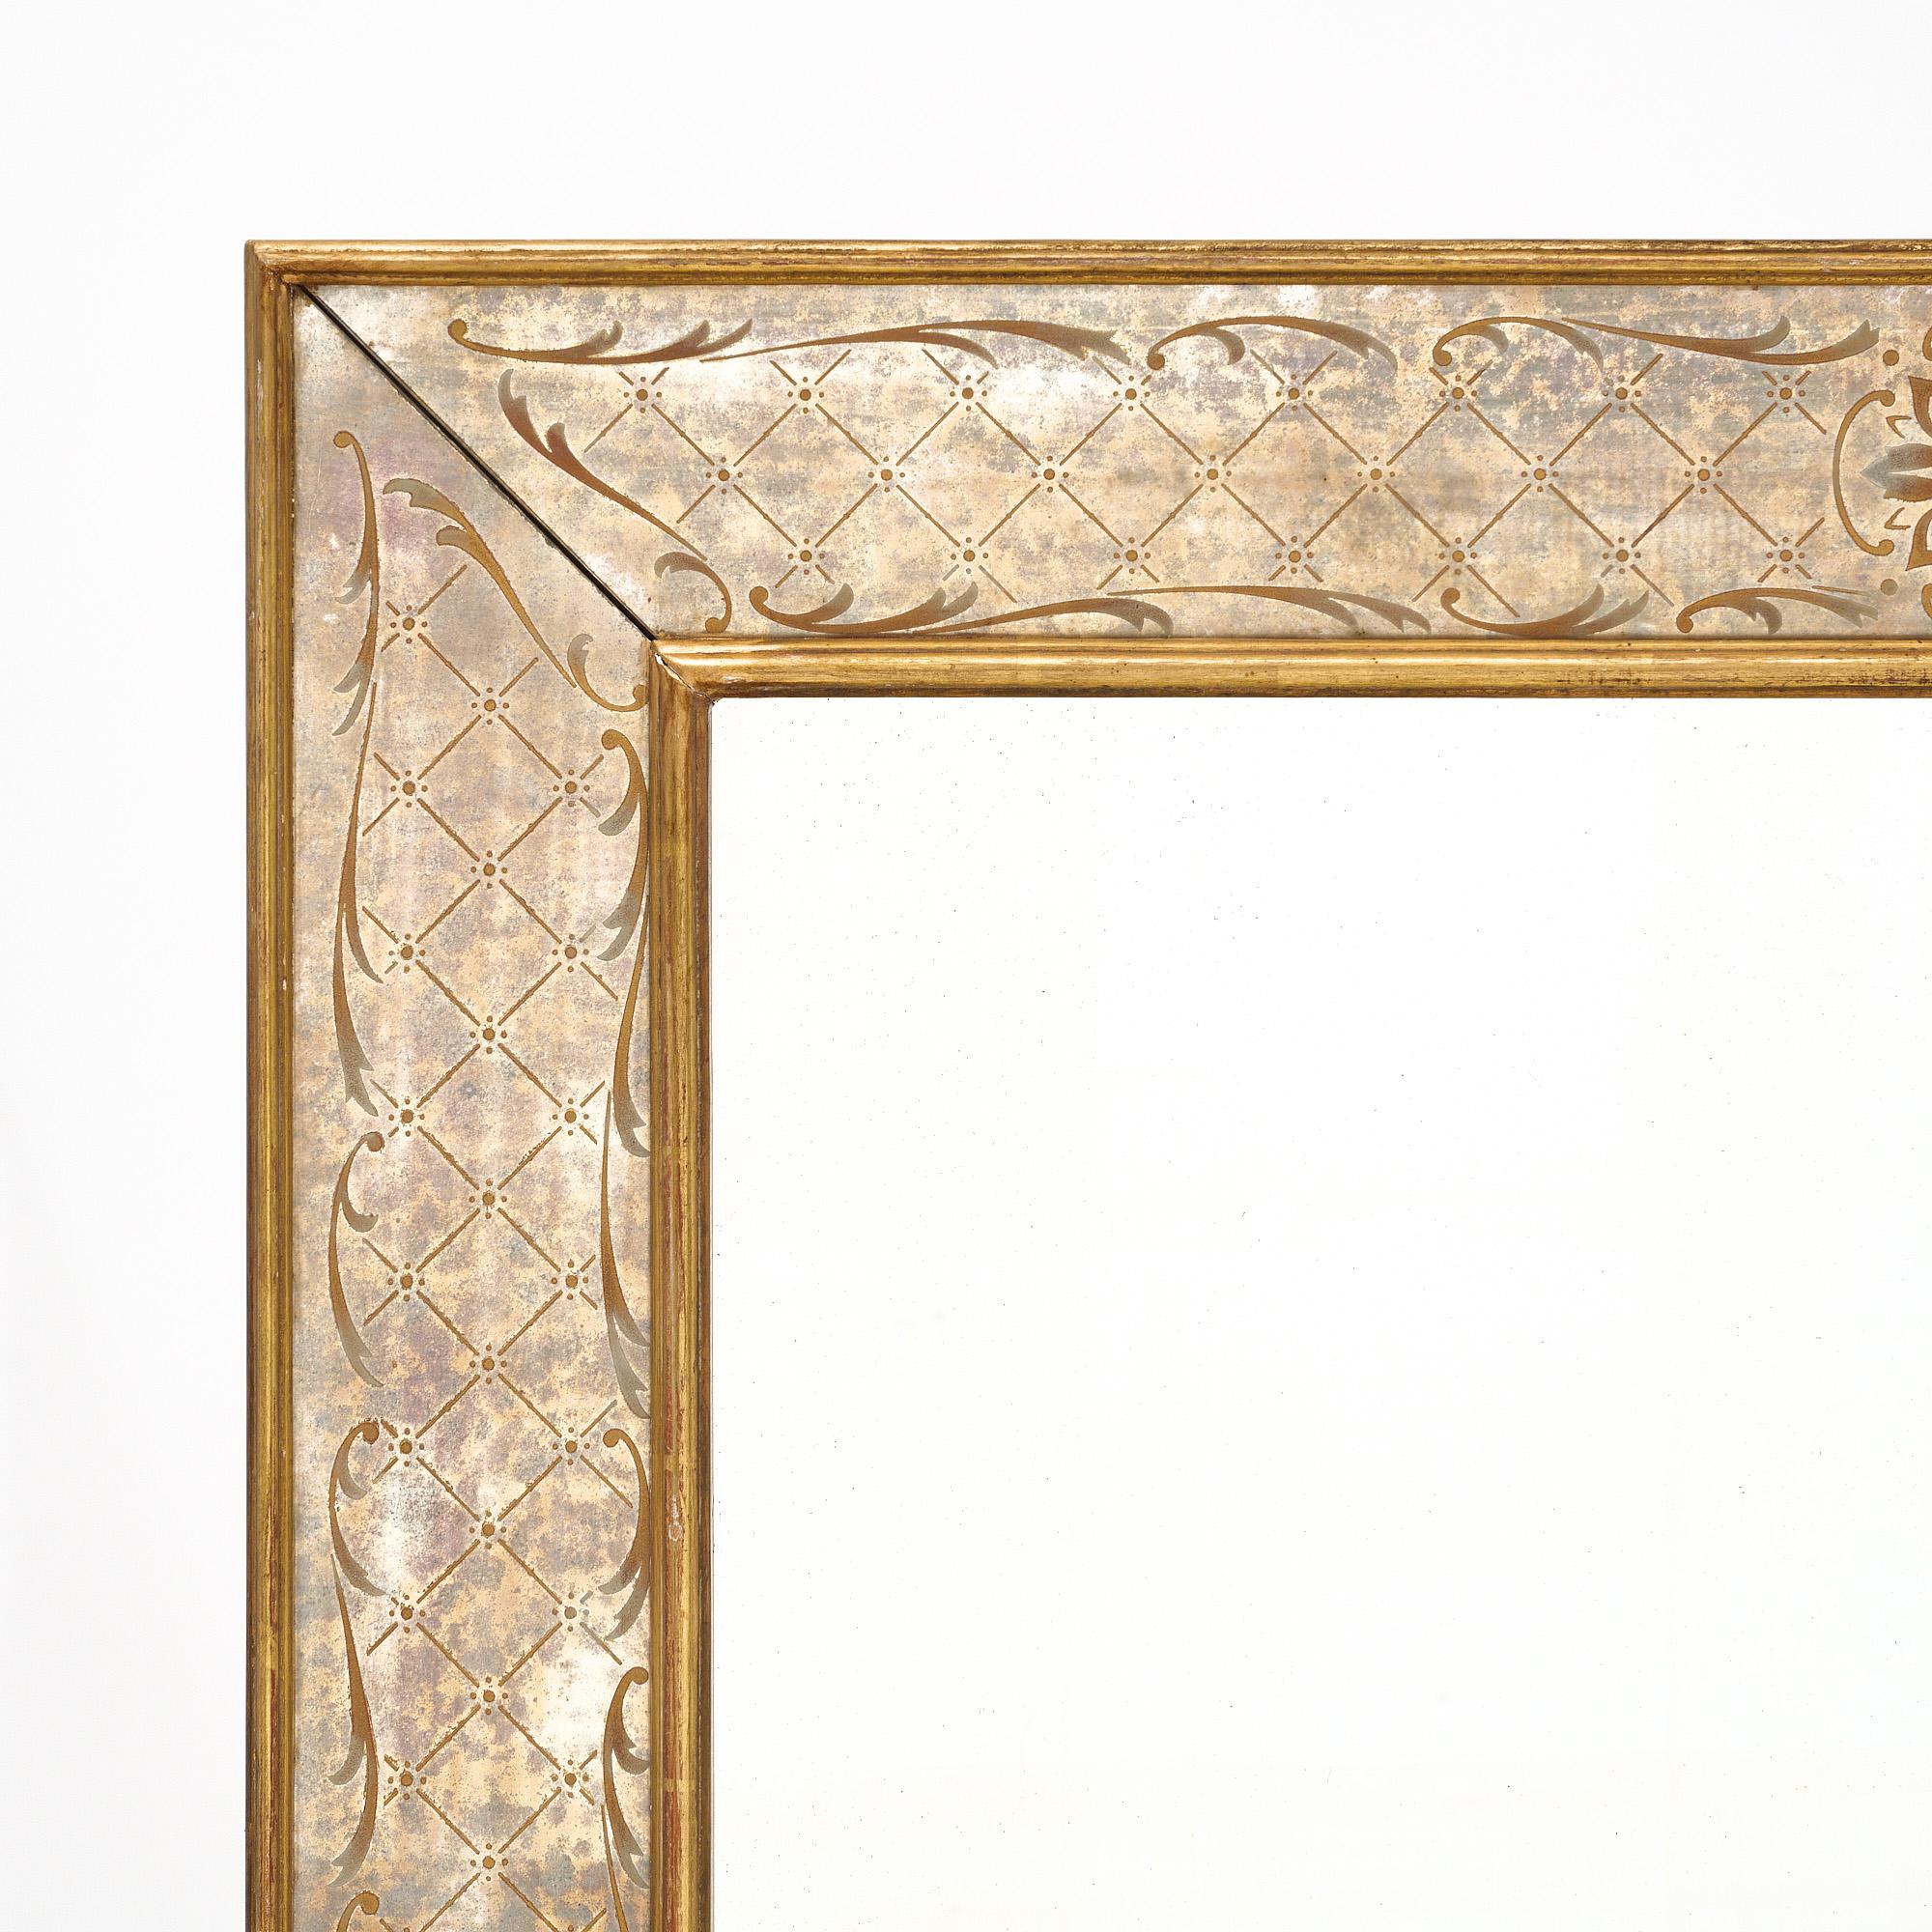 Miroir, français, fait avec un bord églomisé (feuille d'or et peinture sur la face arrière du miroir). Il est doté d'un cadre en or 24 carats et d'un miroir central d'origine.
